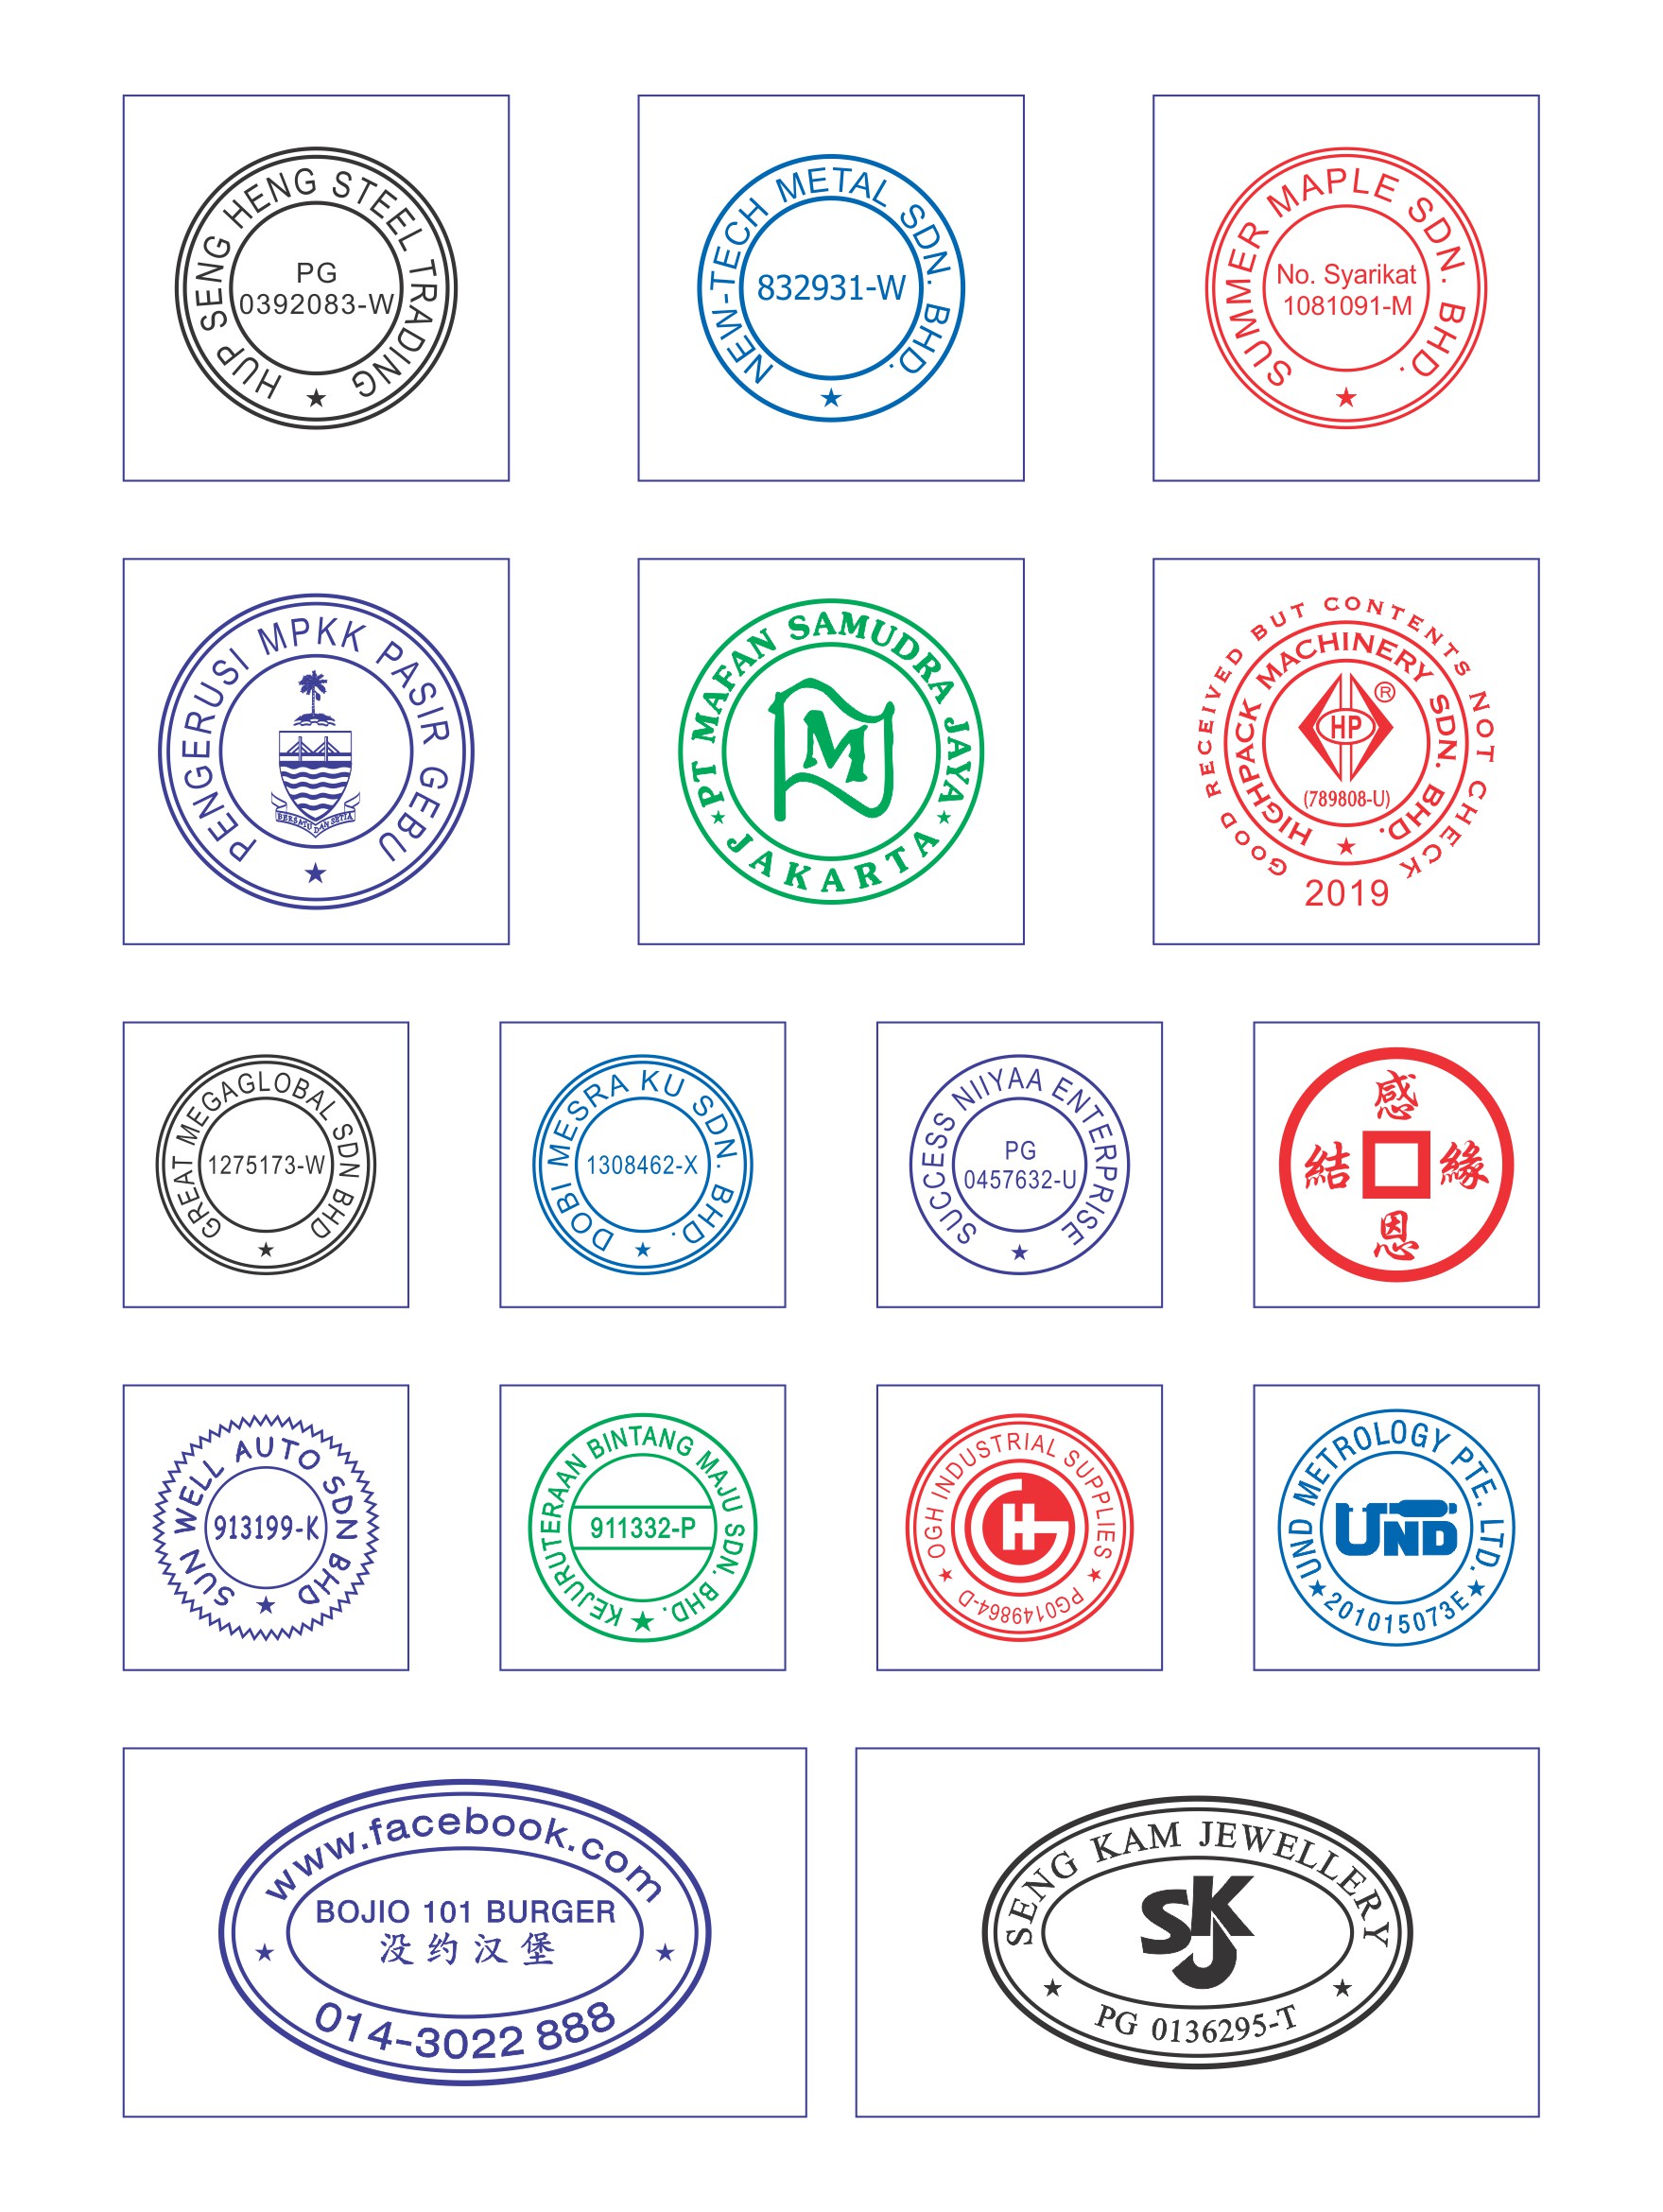 Preink / Rubber Stamp | Yew Design